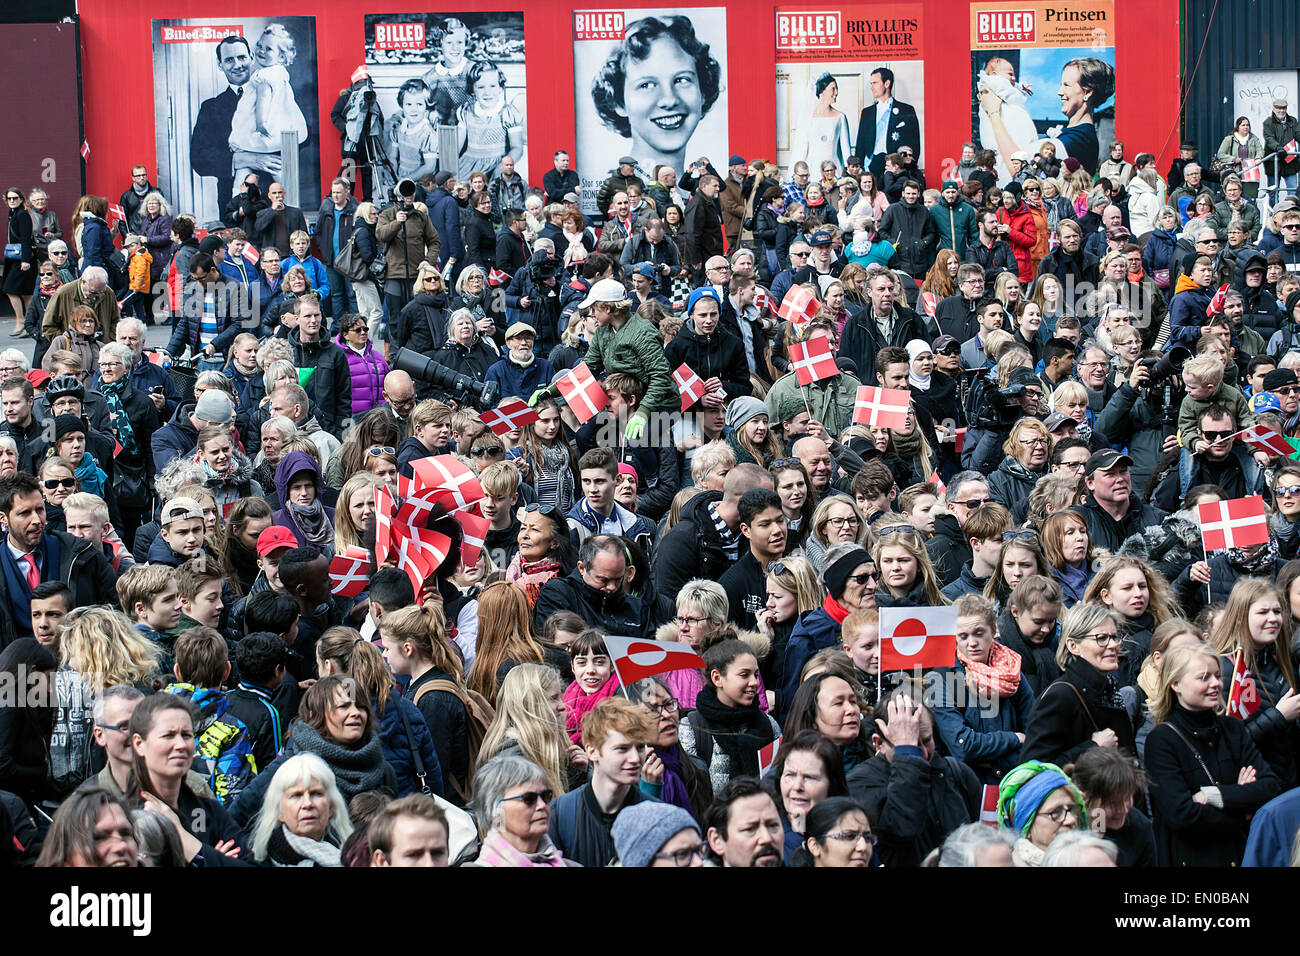 Copenhague, Danemark, avril16th, 2015. Les spectateurs de la place de l'Hôtel de ville de Copenhague en attente de la Reine Margrethe de comparaître à l'Hôtel de Ville balcon à l'occasion de son soixante-cinquième anniversaire. Bacgground : page d'affiches montrant des images de la Reine Margrethe à partir d'un petit enfant à maintenant Banque D'Images